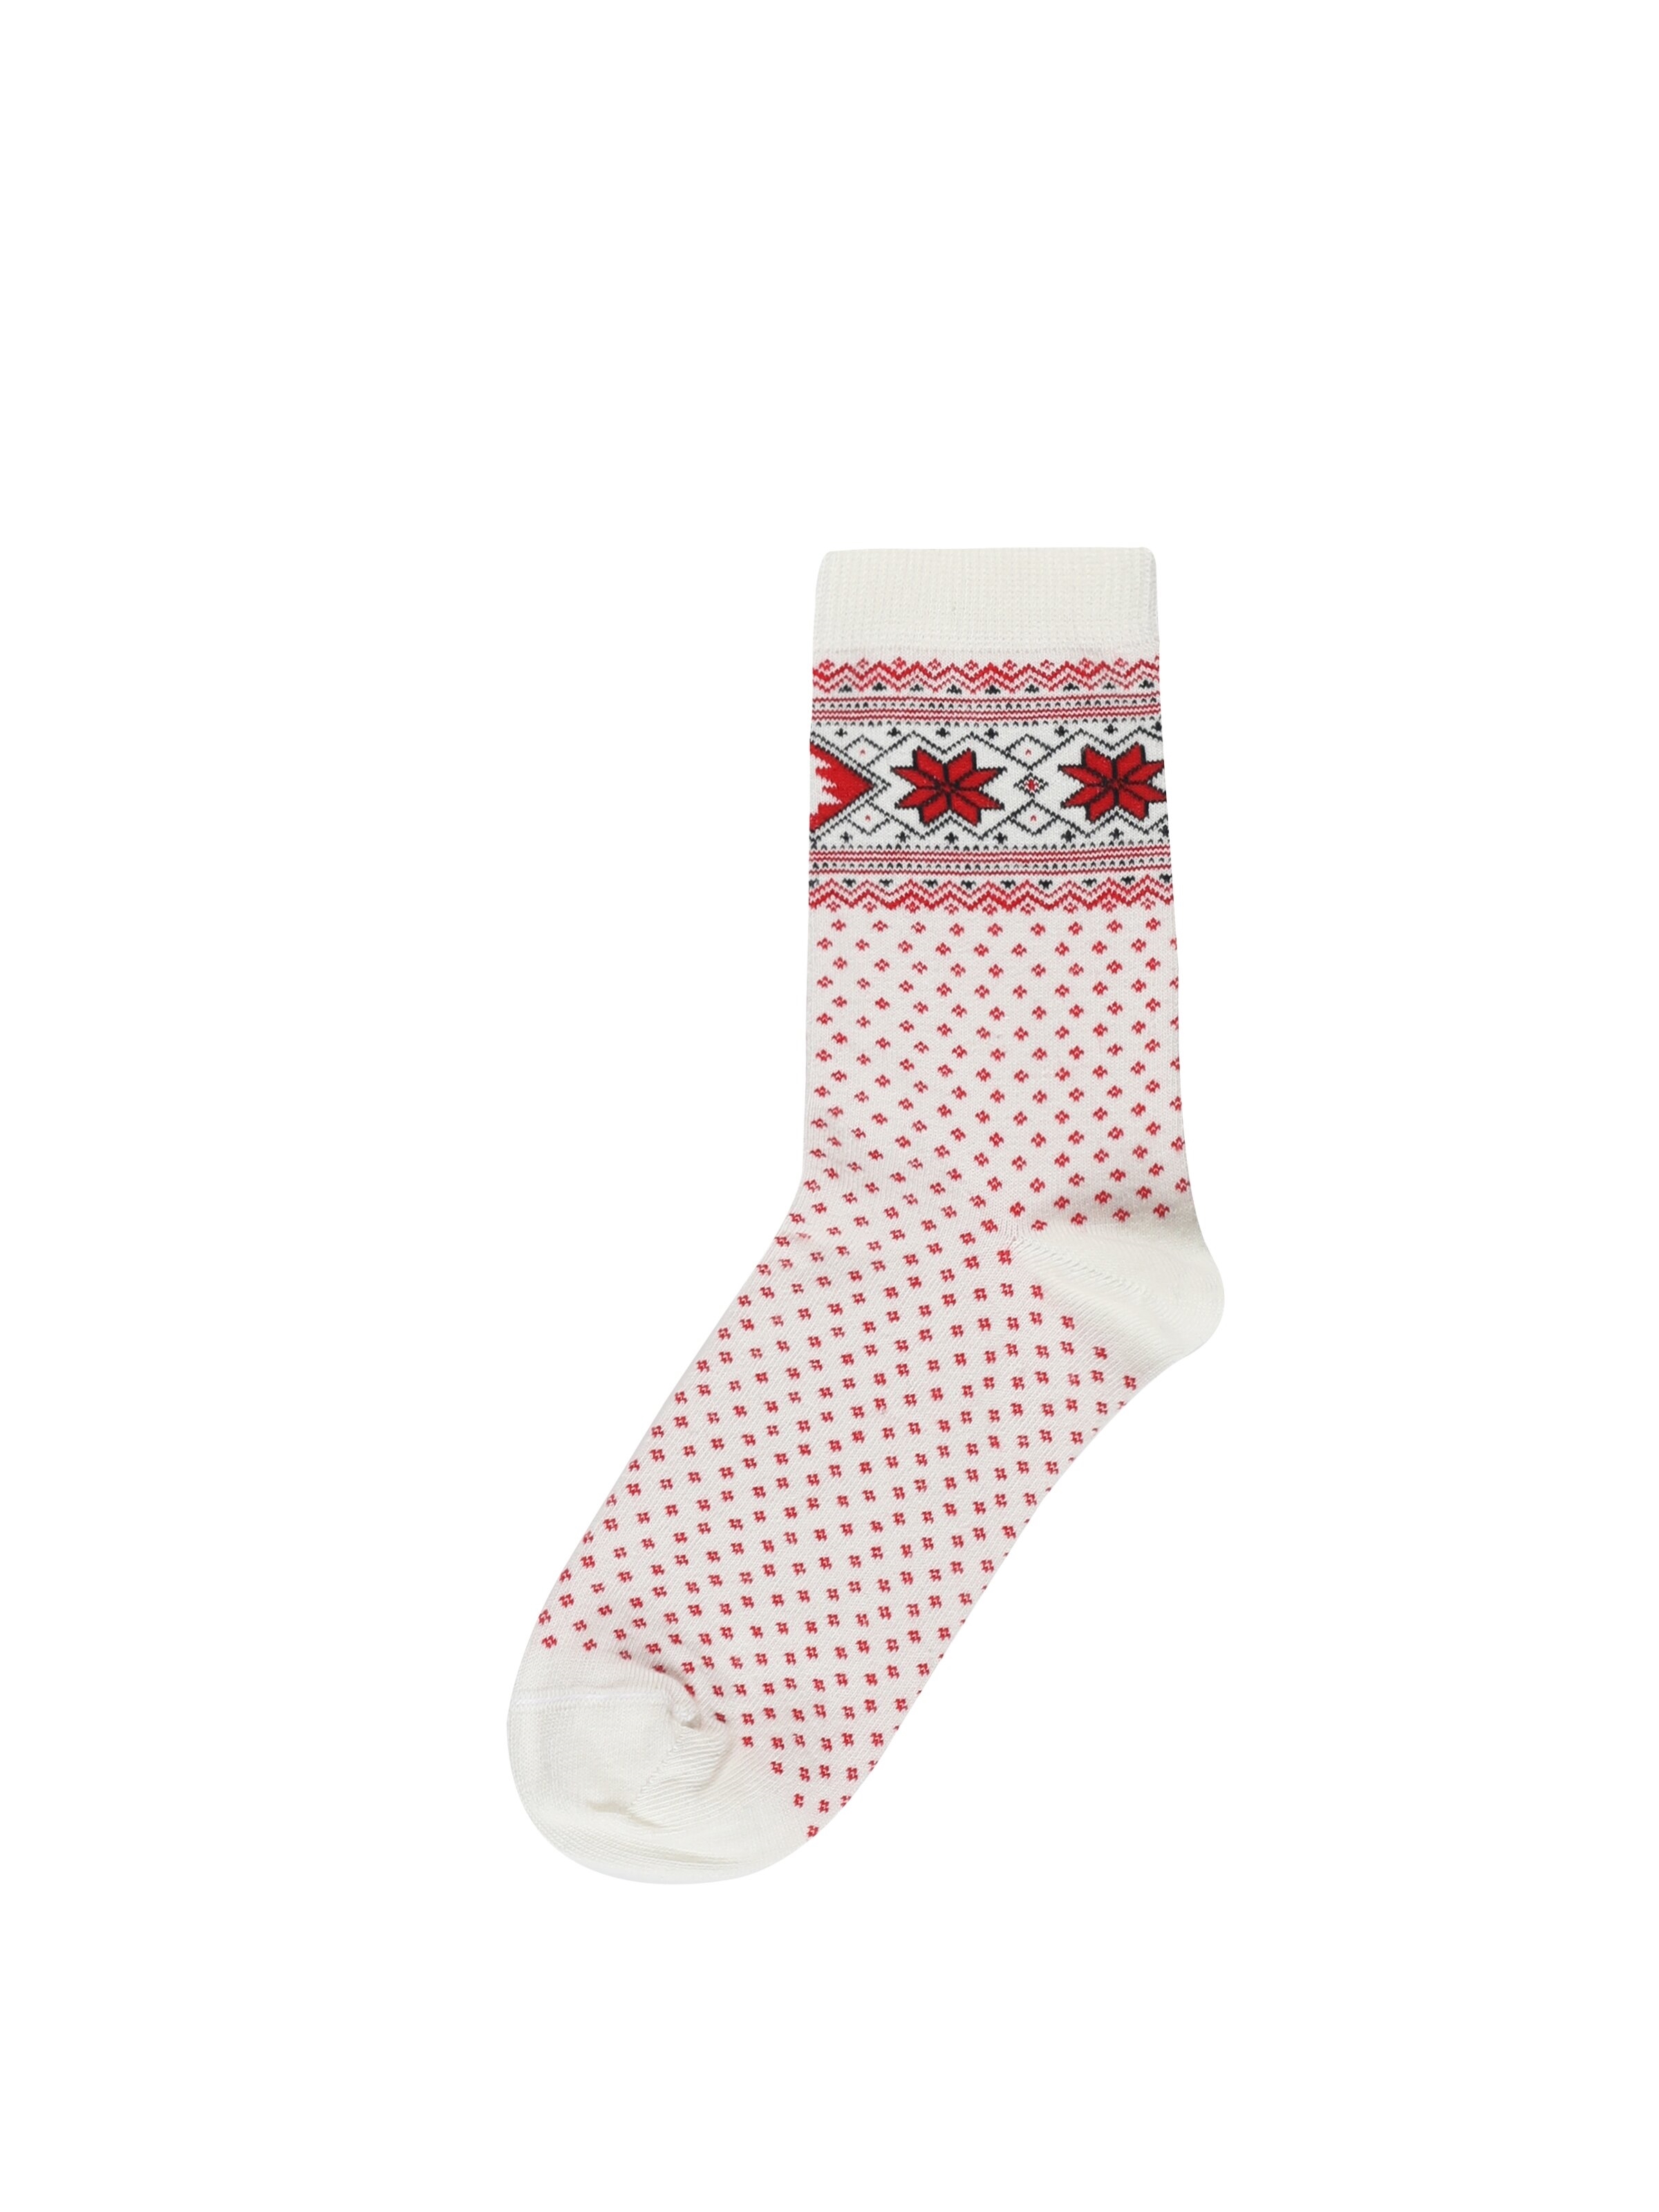 Показати інформацію про Шкарпетки Жіночі Блідо-Жовті Cl1056139